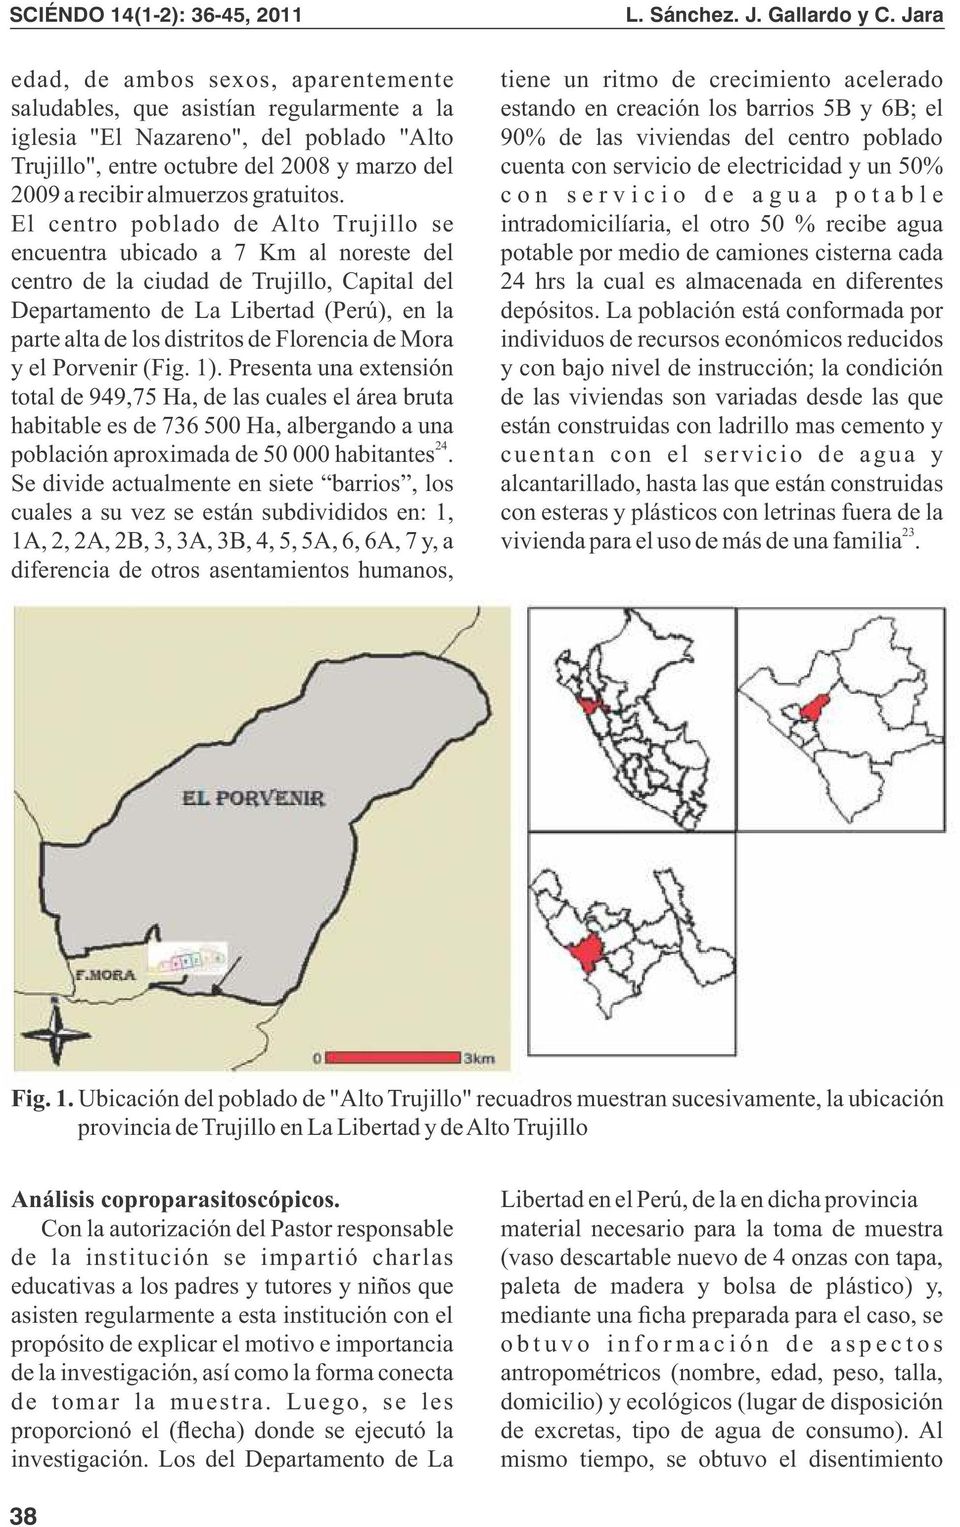 El centro poblado de Alto Trujillo se encuentra ubicado a 7 Km al noreste del centro de la ciudad de Trujillo, Capital del Departamento de La Libertad (Perú), en la parte alta de los distritos de